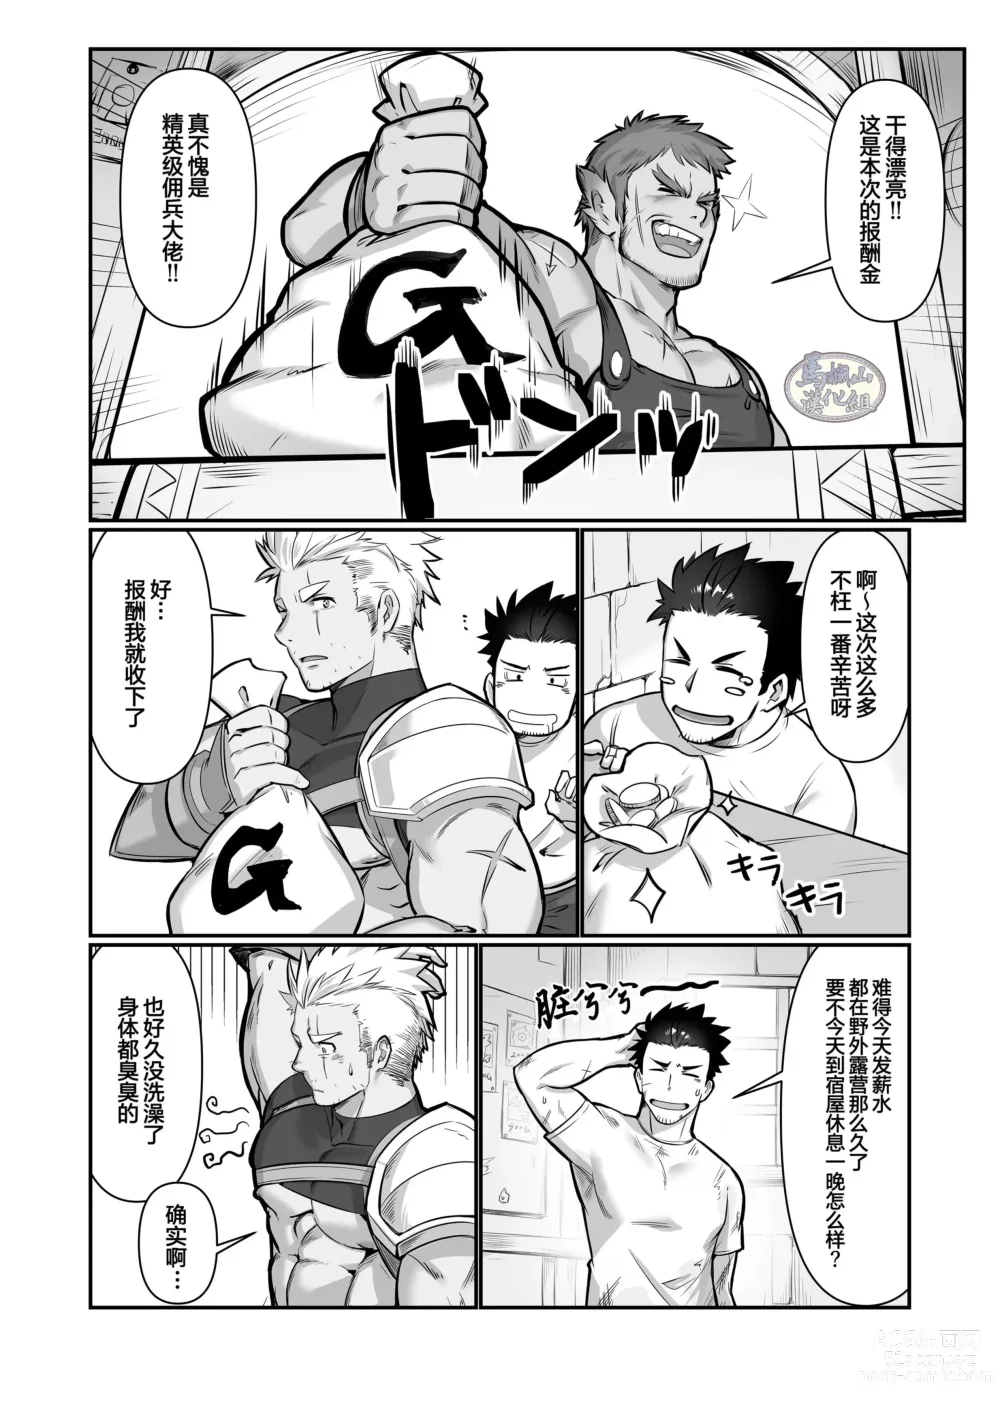 Page 6 of doujinshi 关于我在转生之后身边全是肌肉男的奇闻轶事2